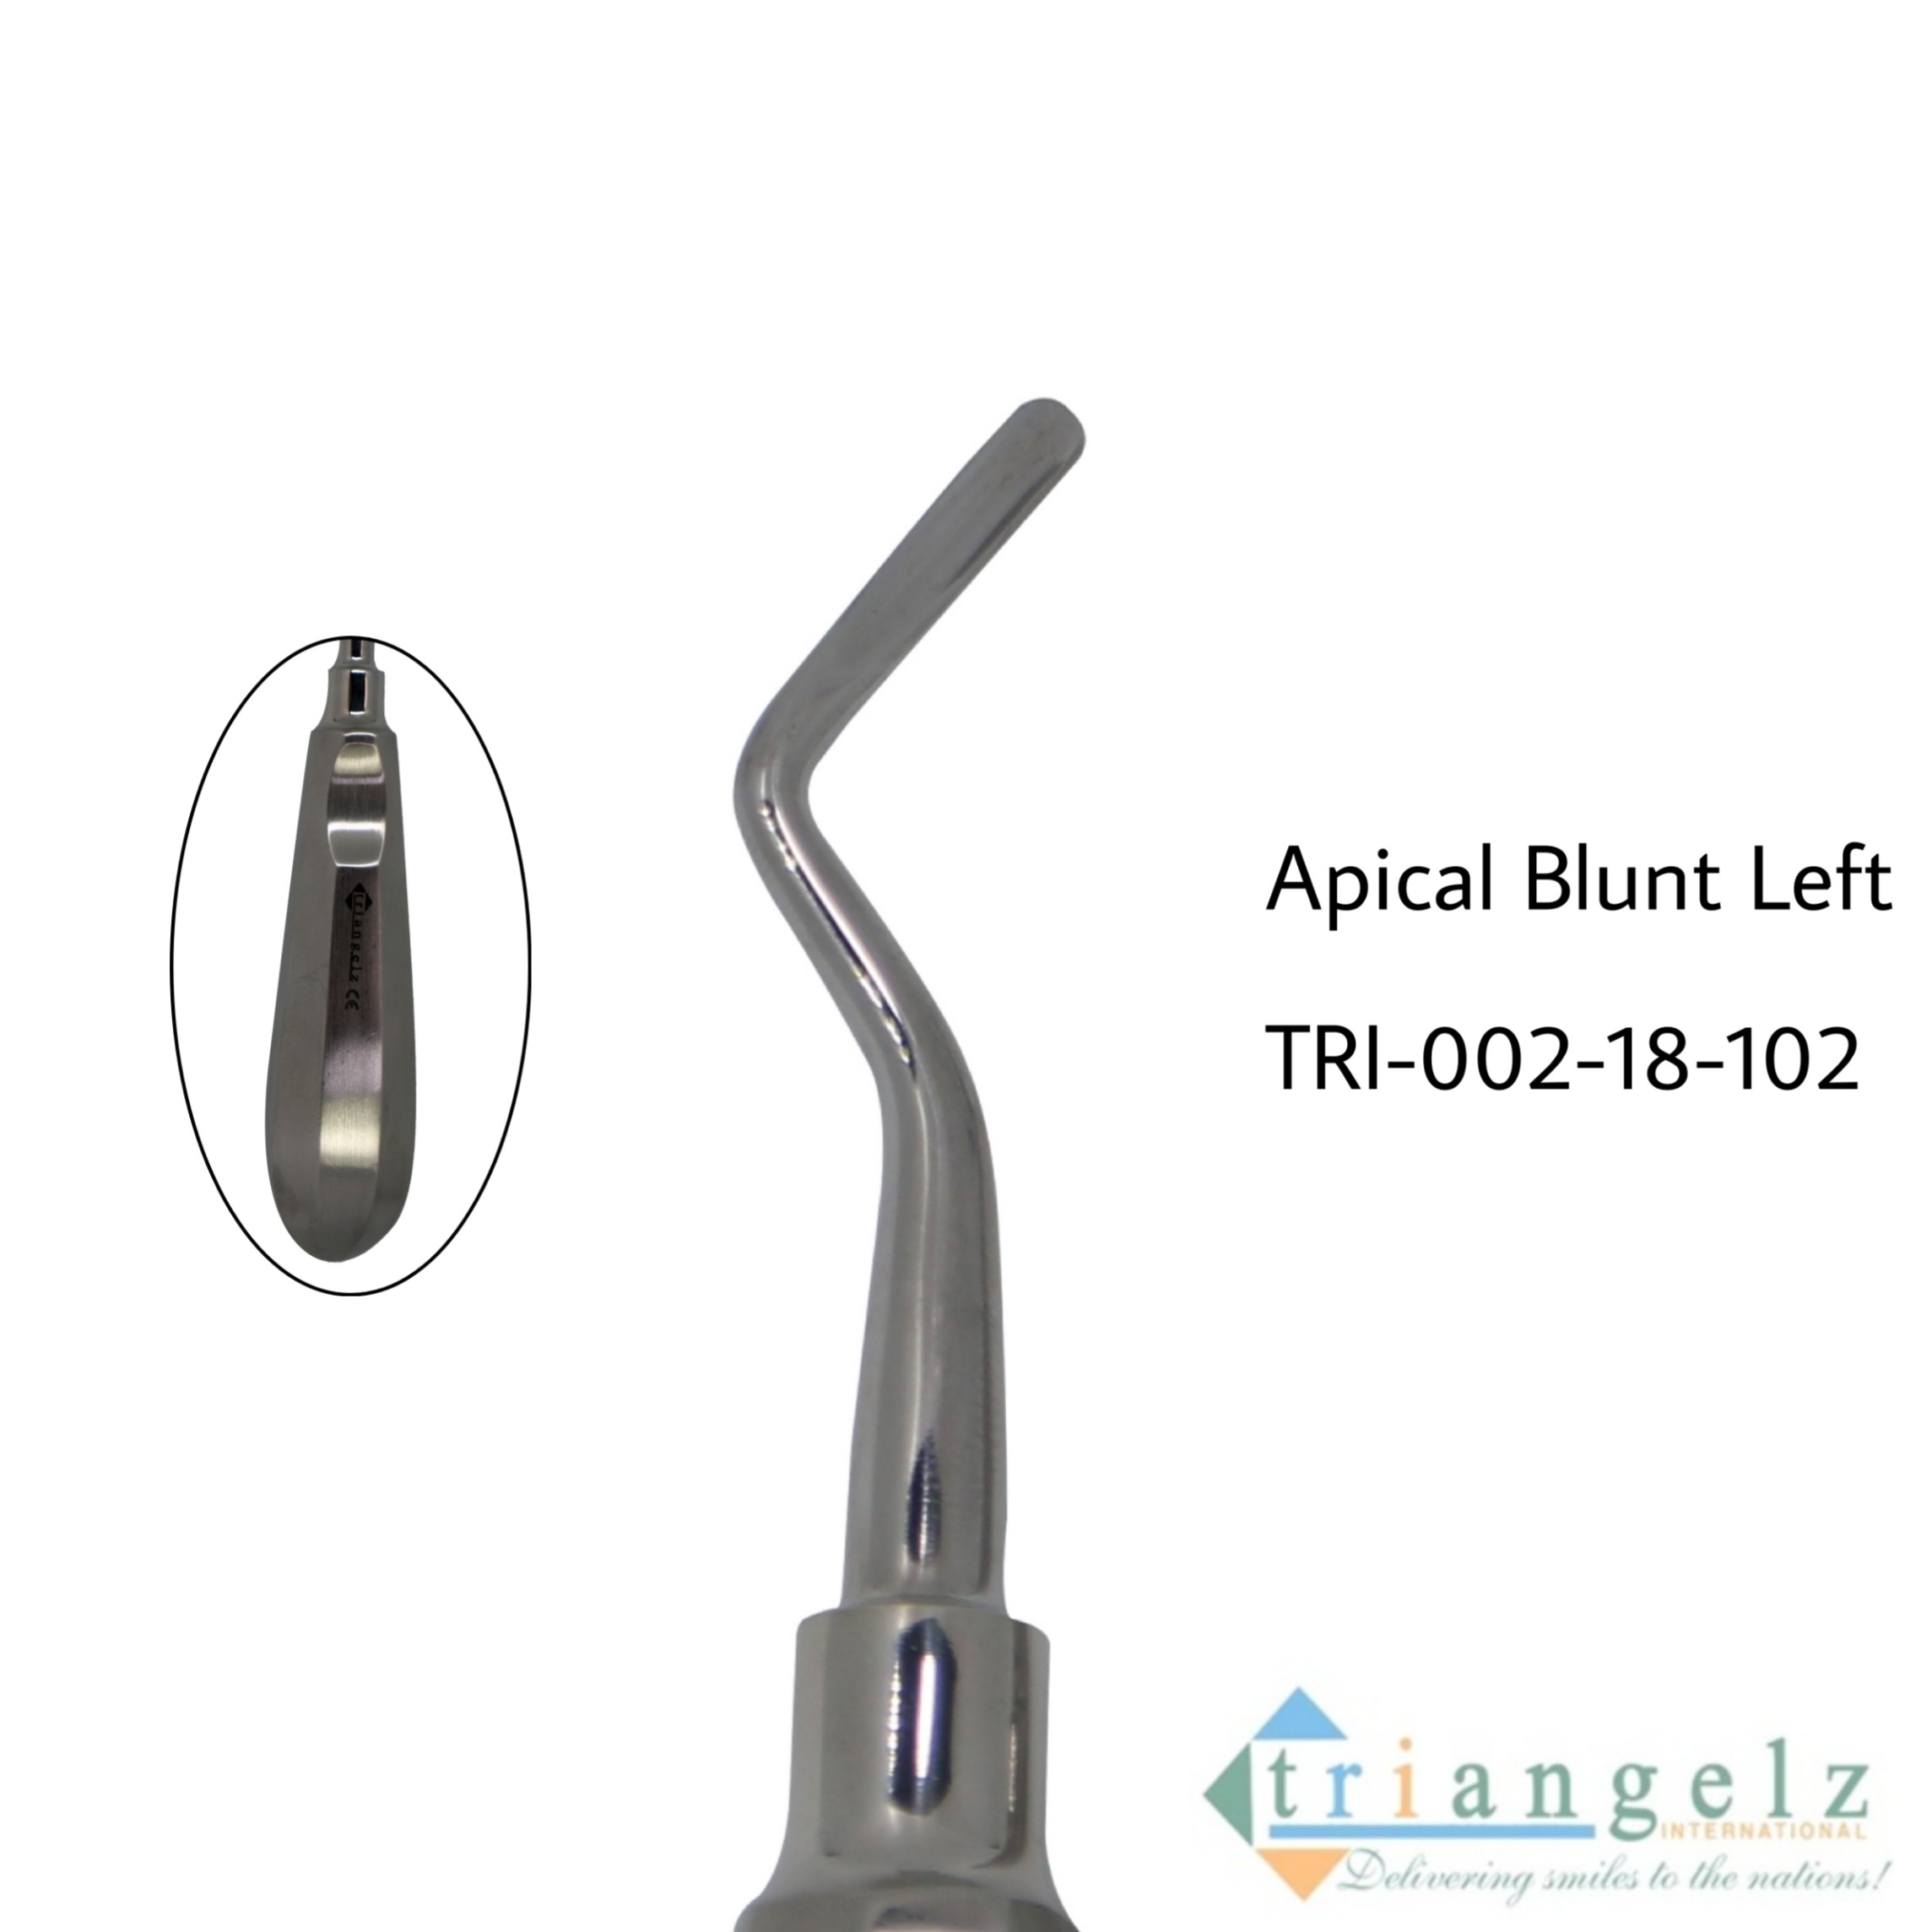 TRI-002-18-102 Apical Blunt Left